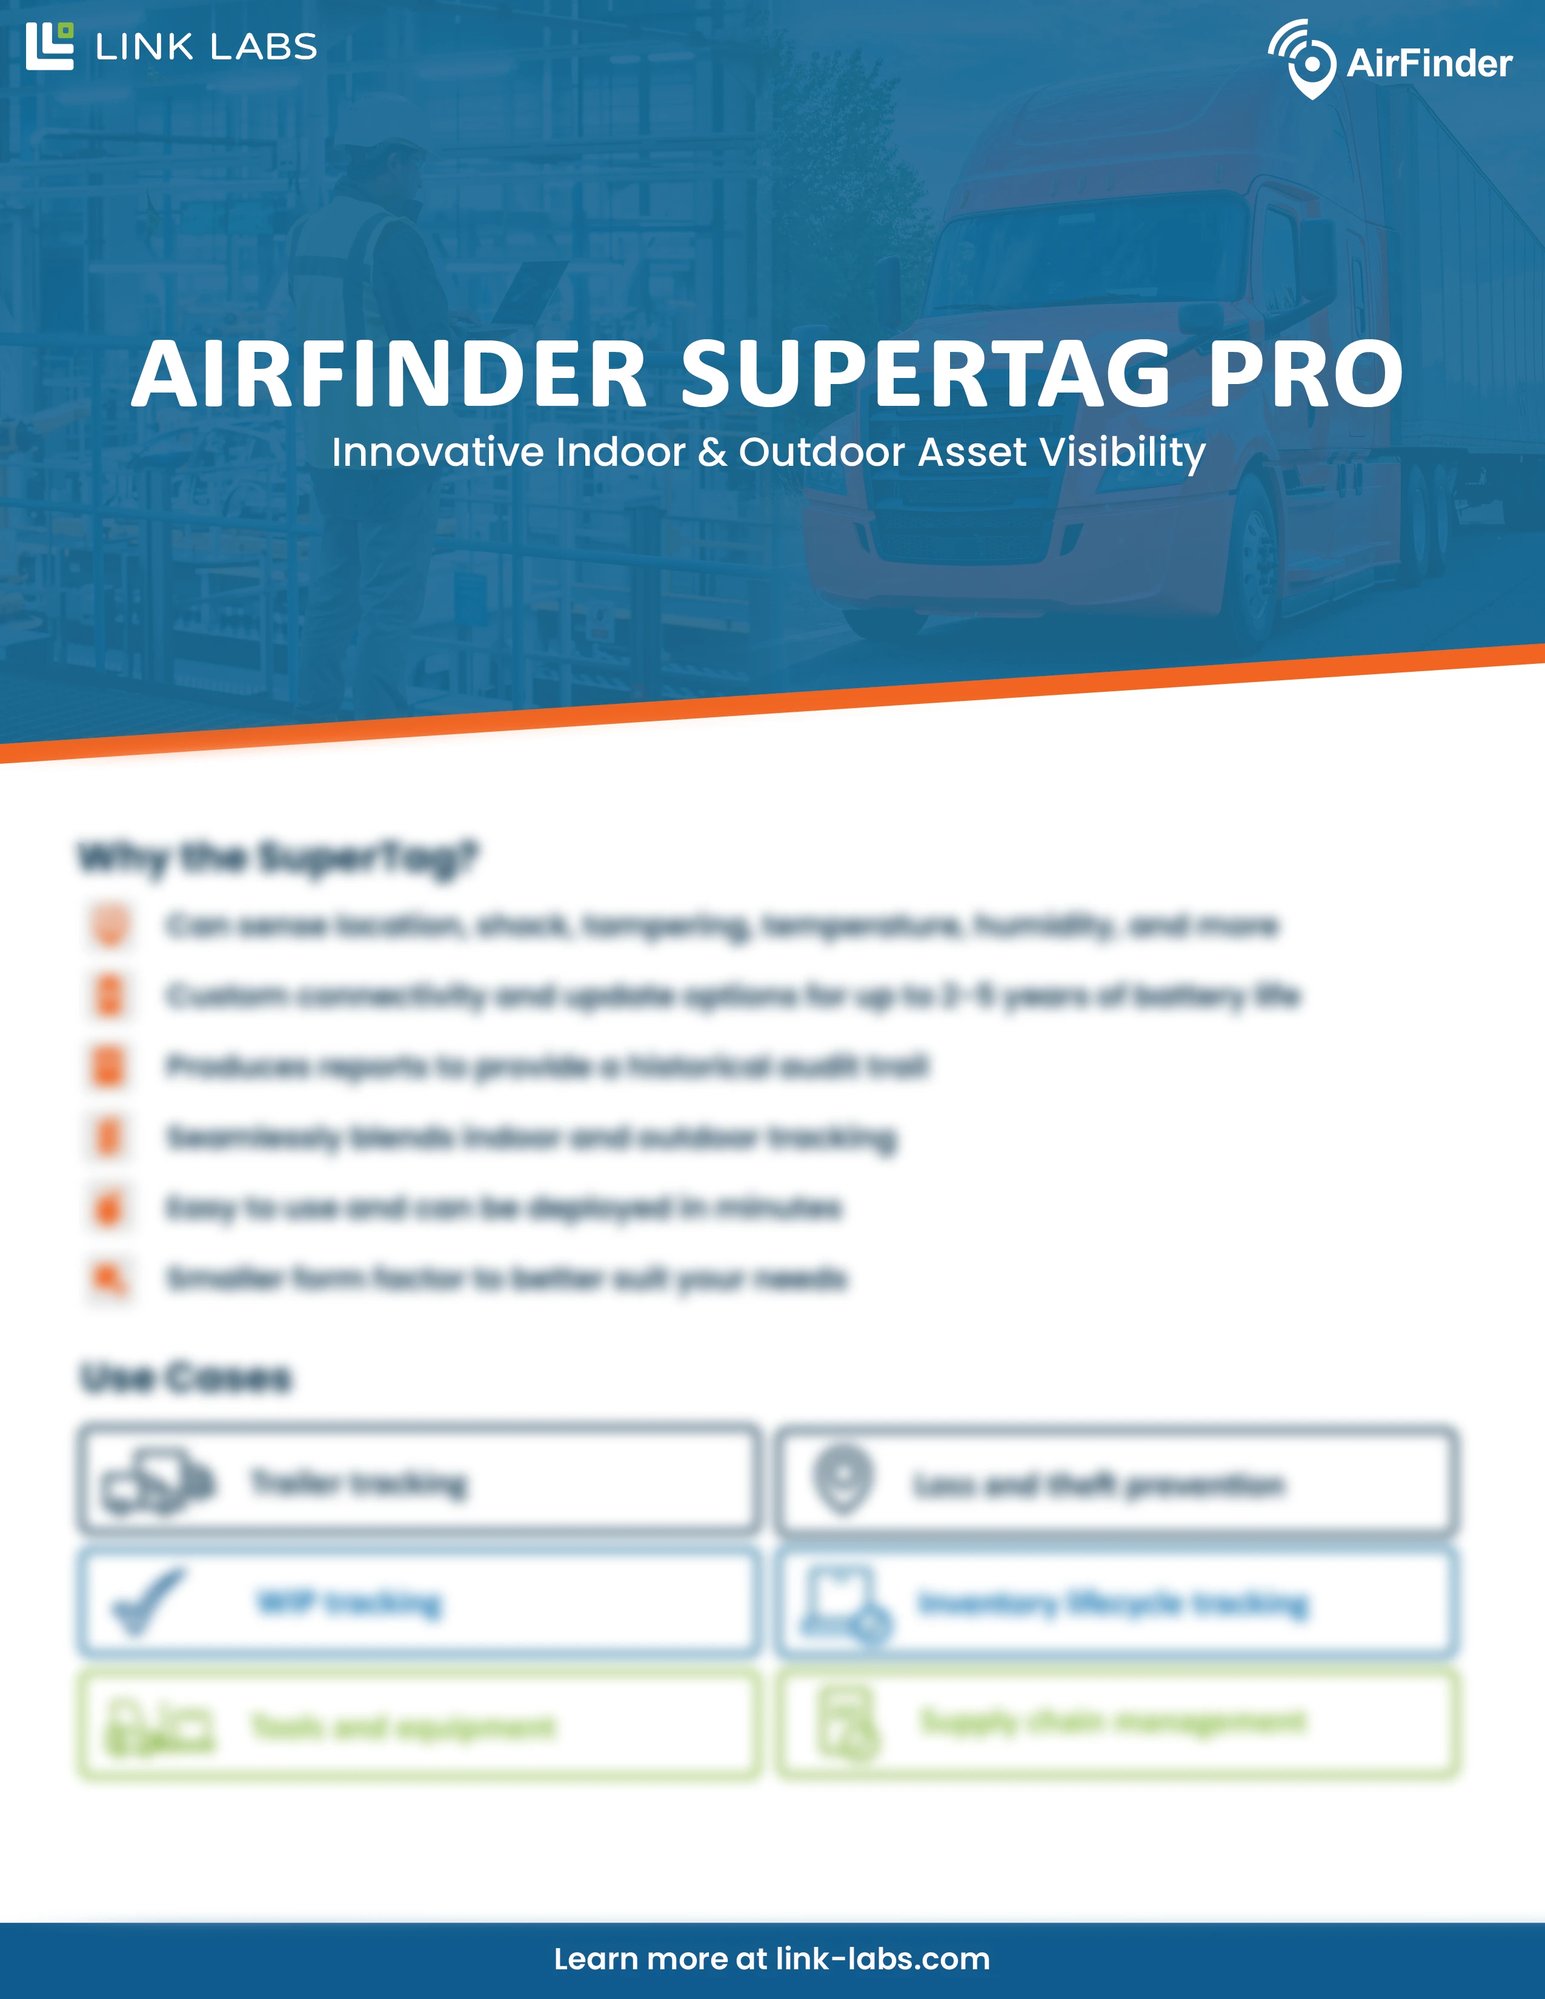 AirFinder SuperTag Pro